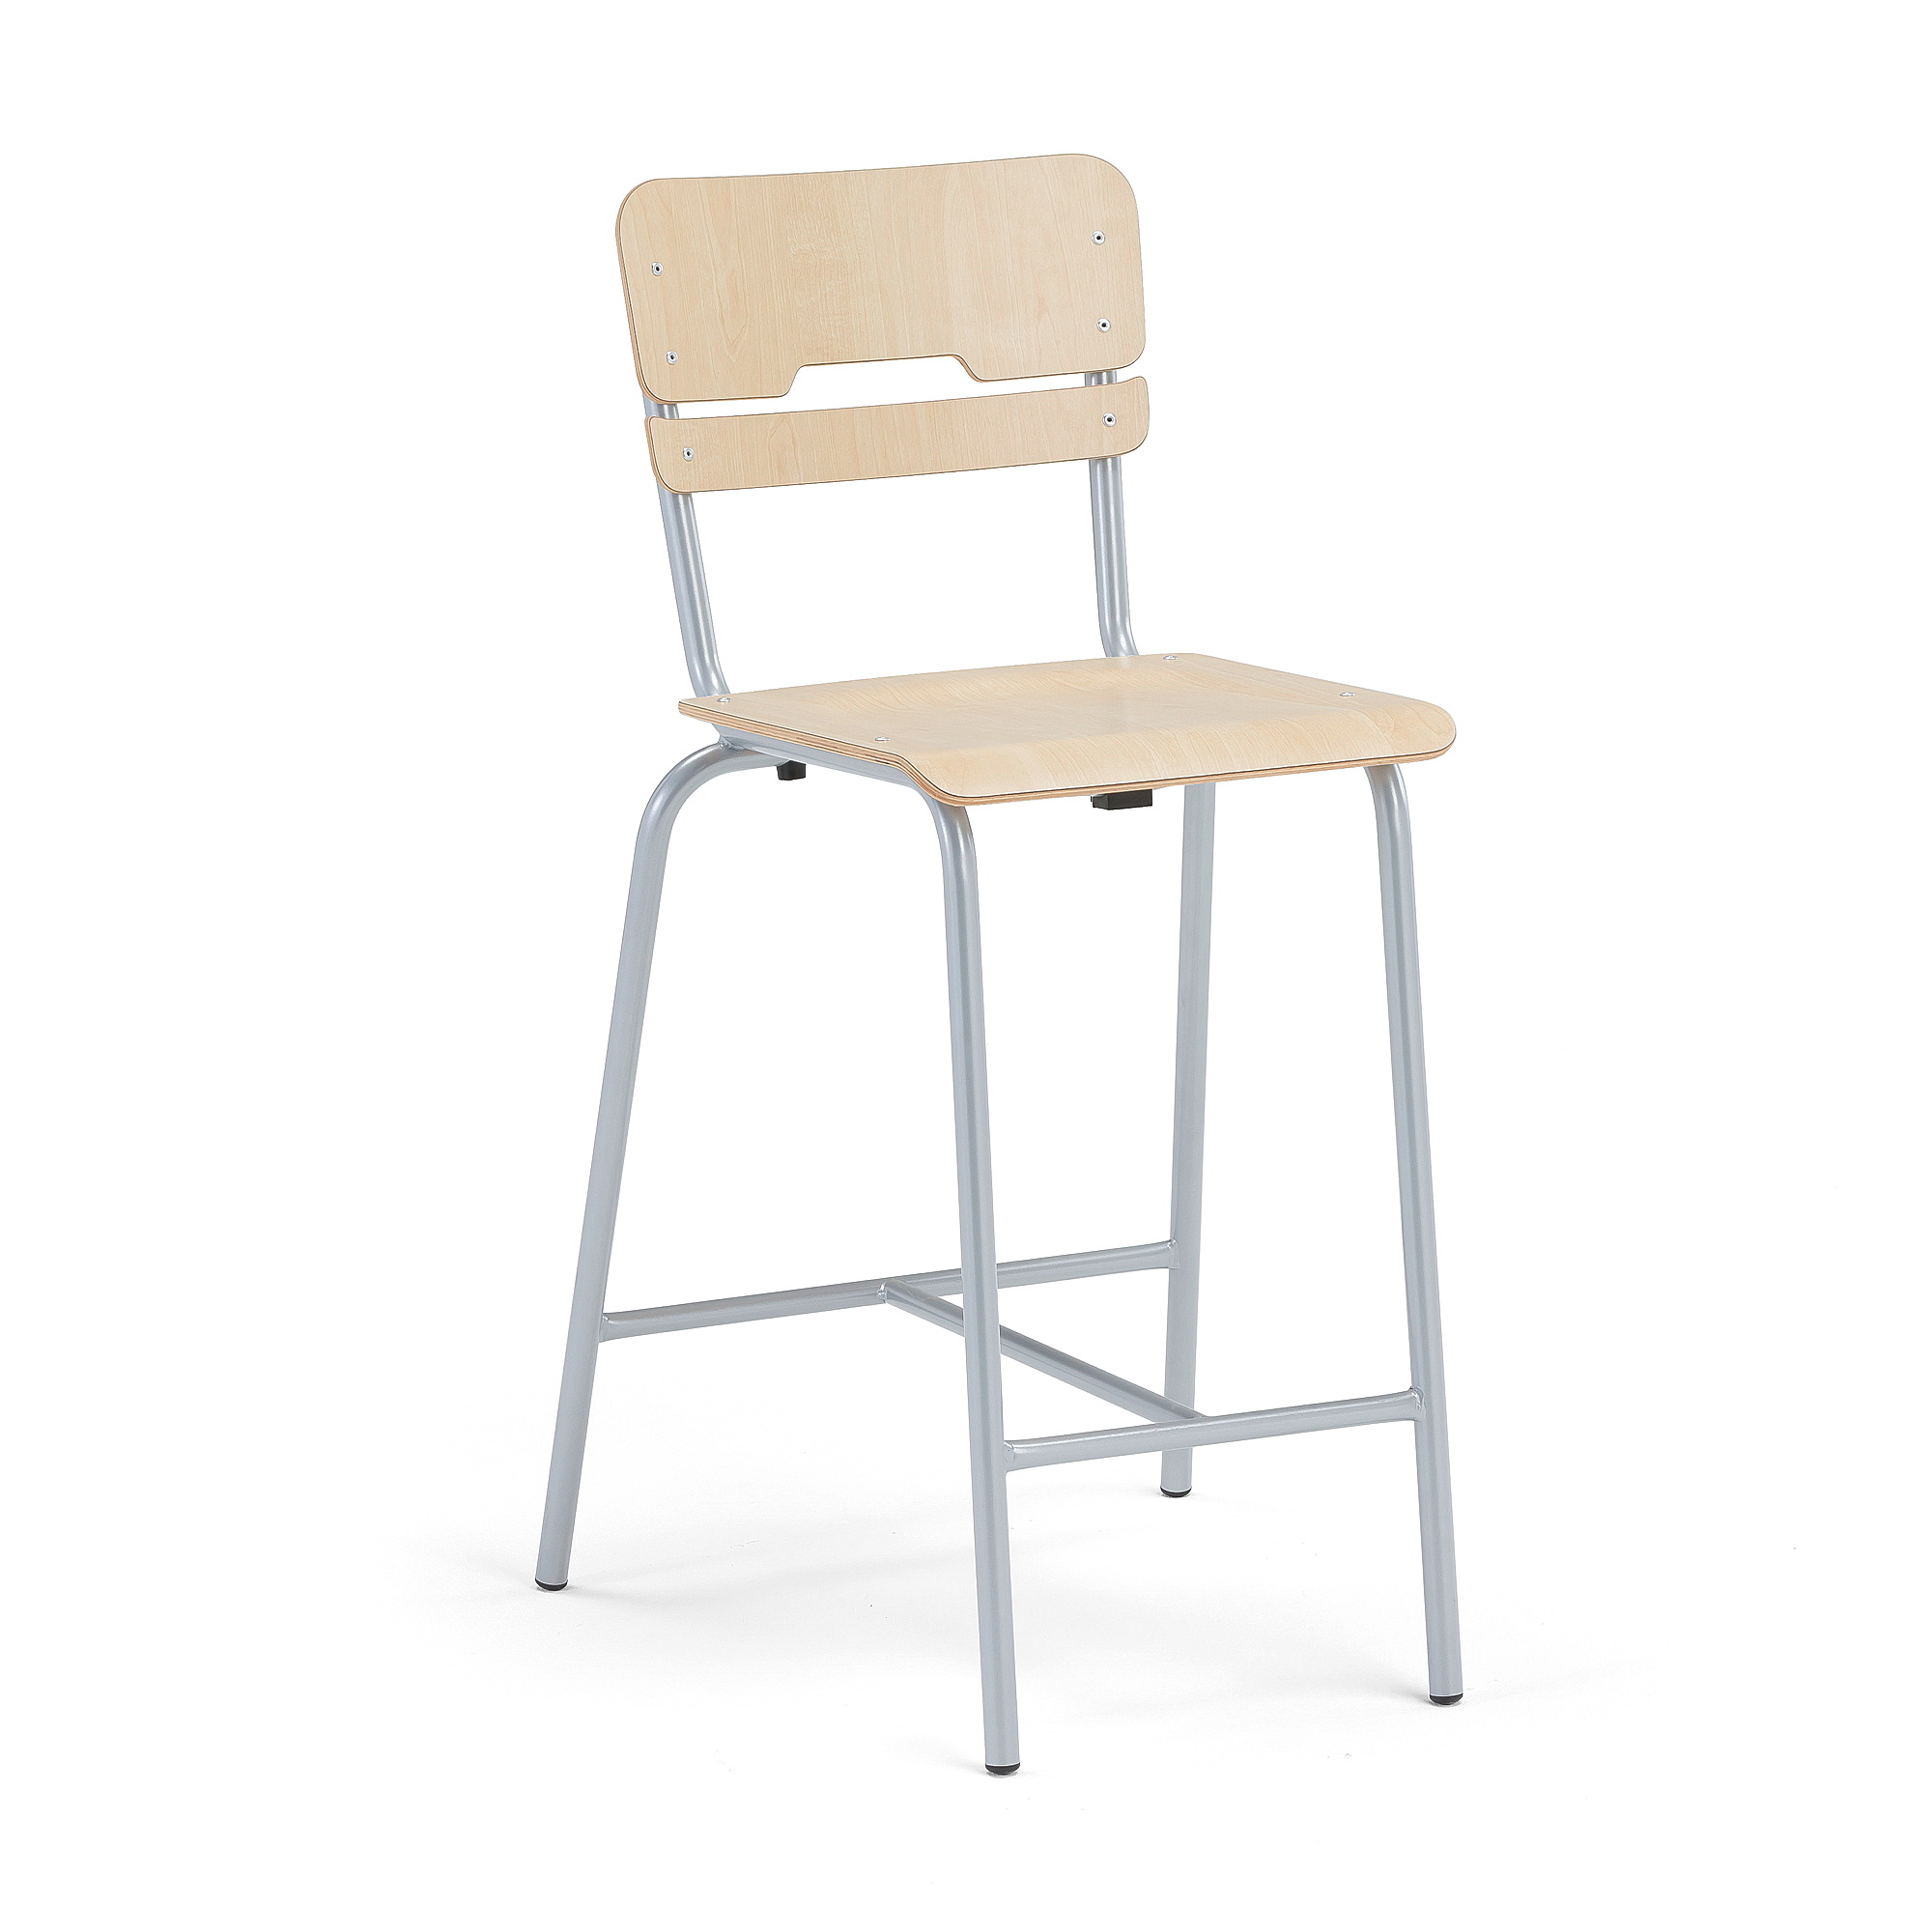 Školní židle SCIENTIA, sedák 390x390 mm, výška 650 mm, stříbrná/bříza